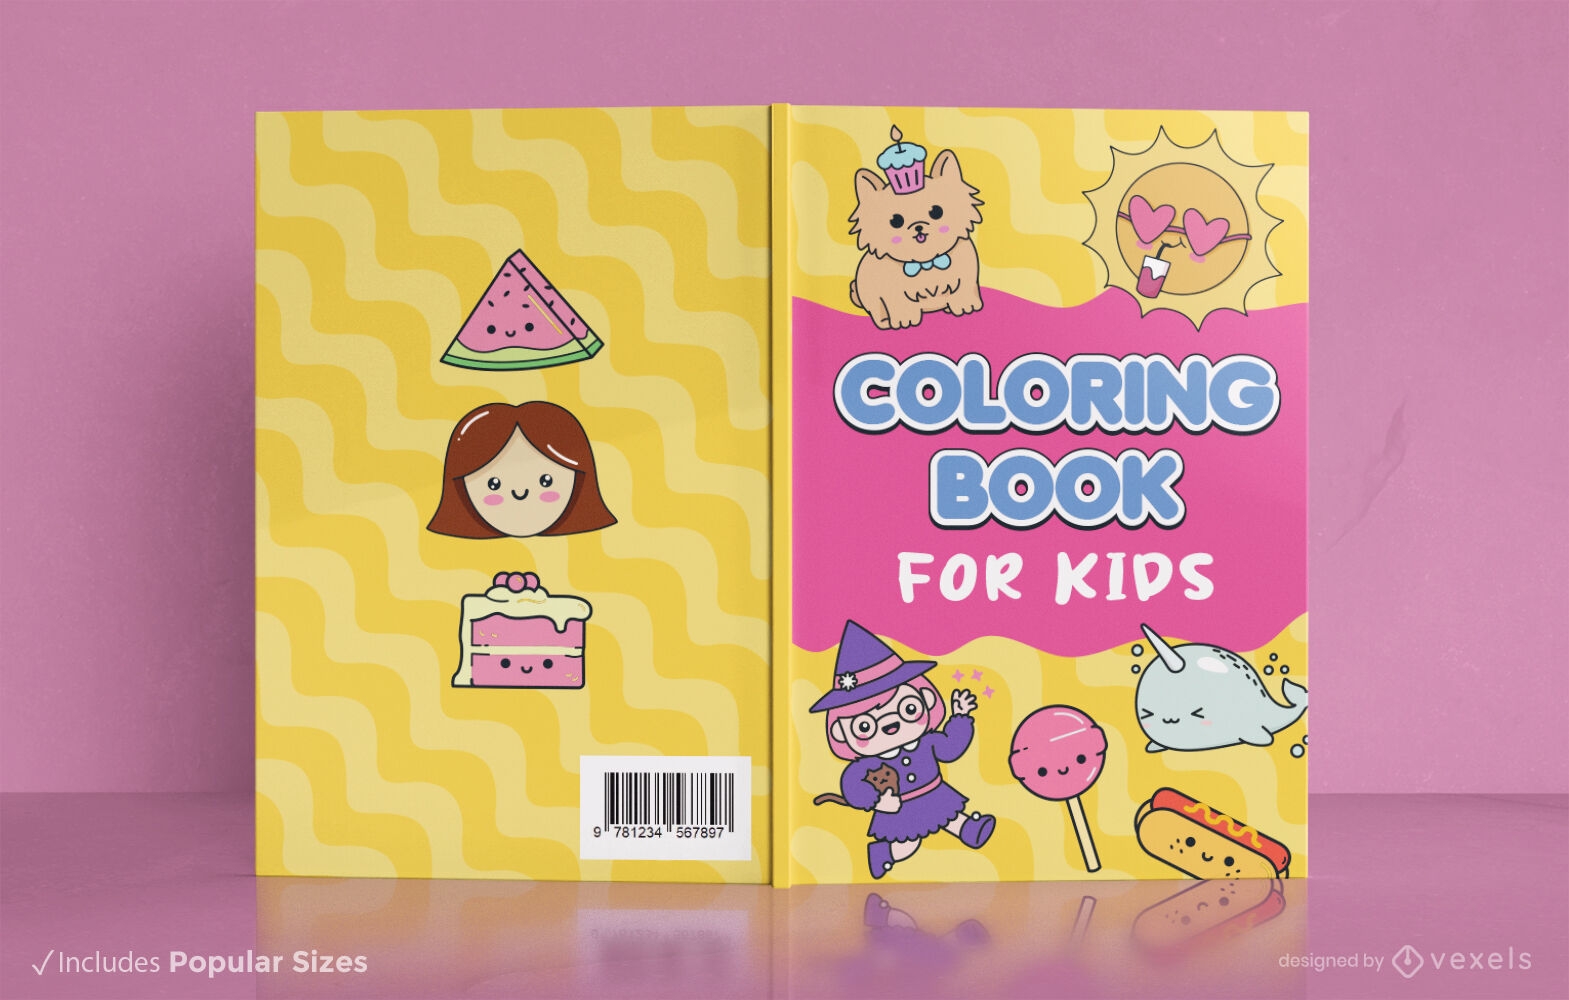 Design de capa de livro para colorir infantil com personagens lúdicos